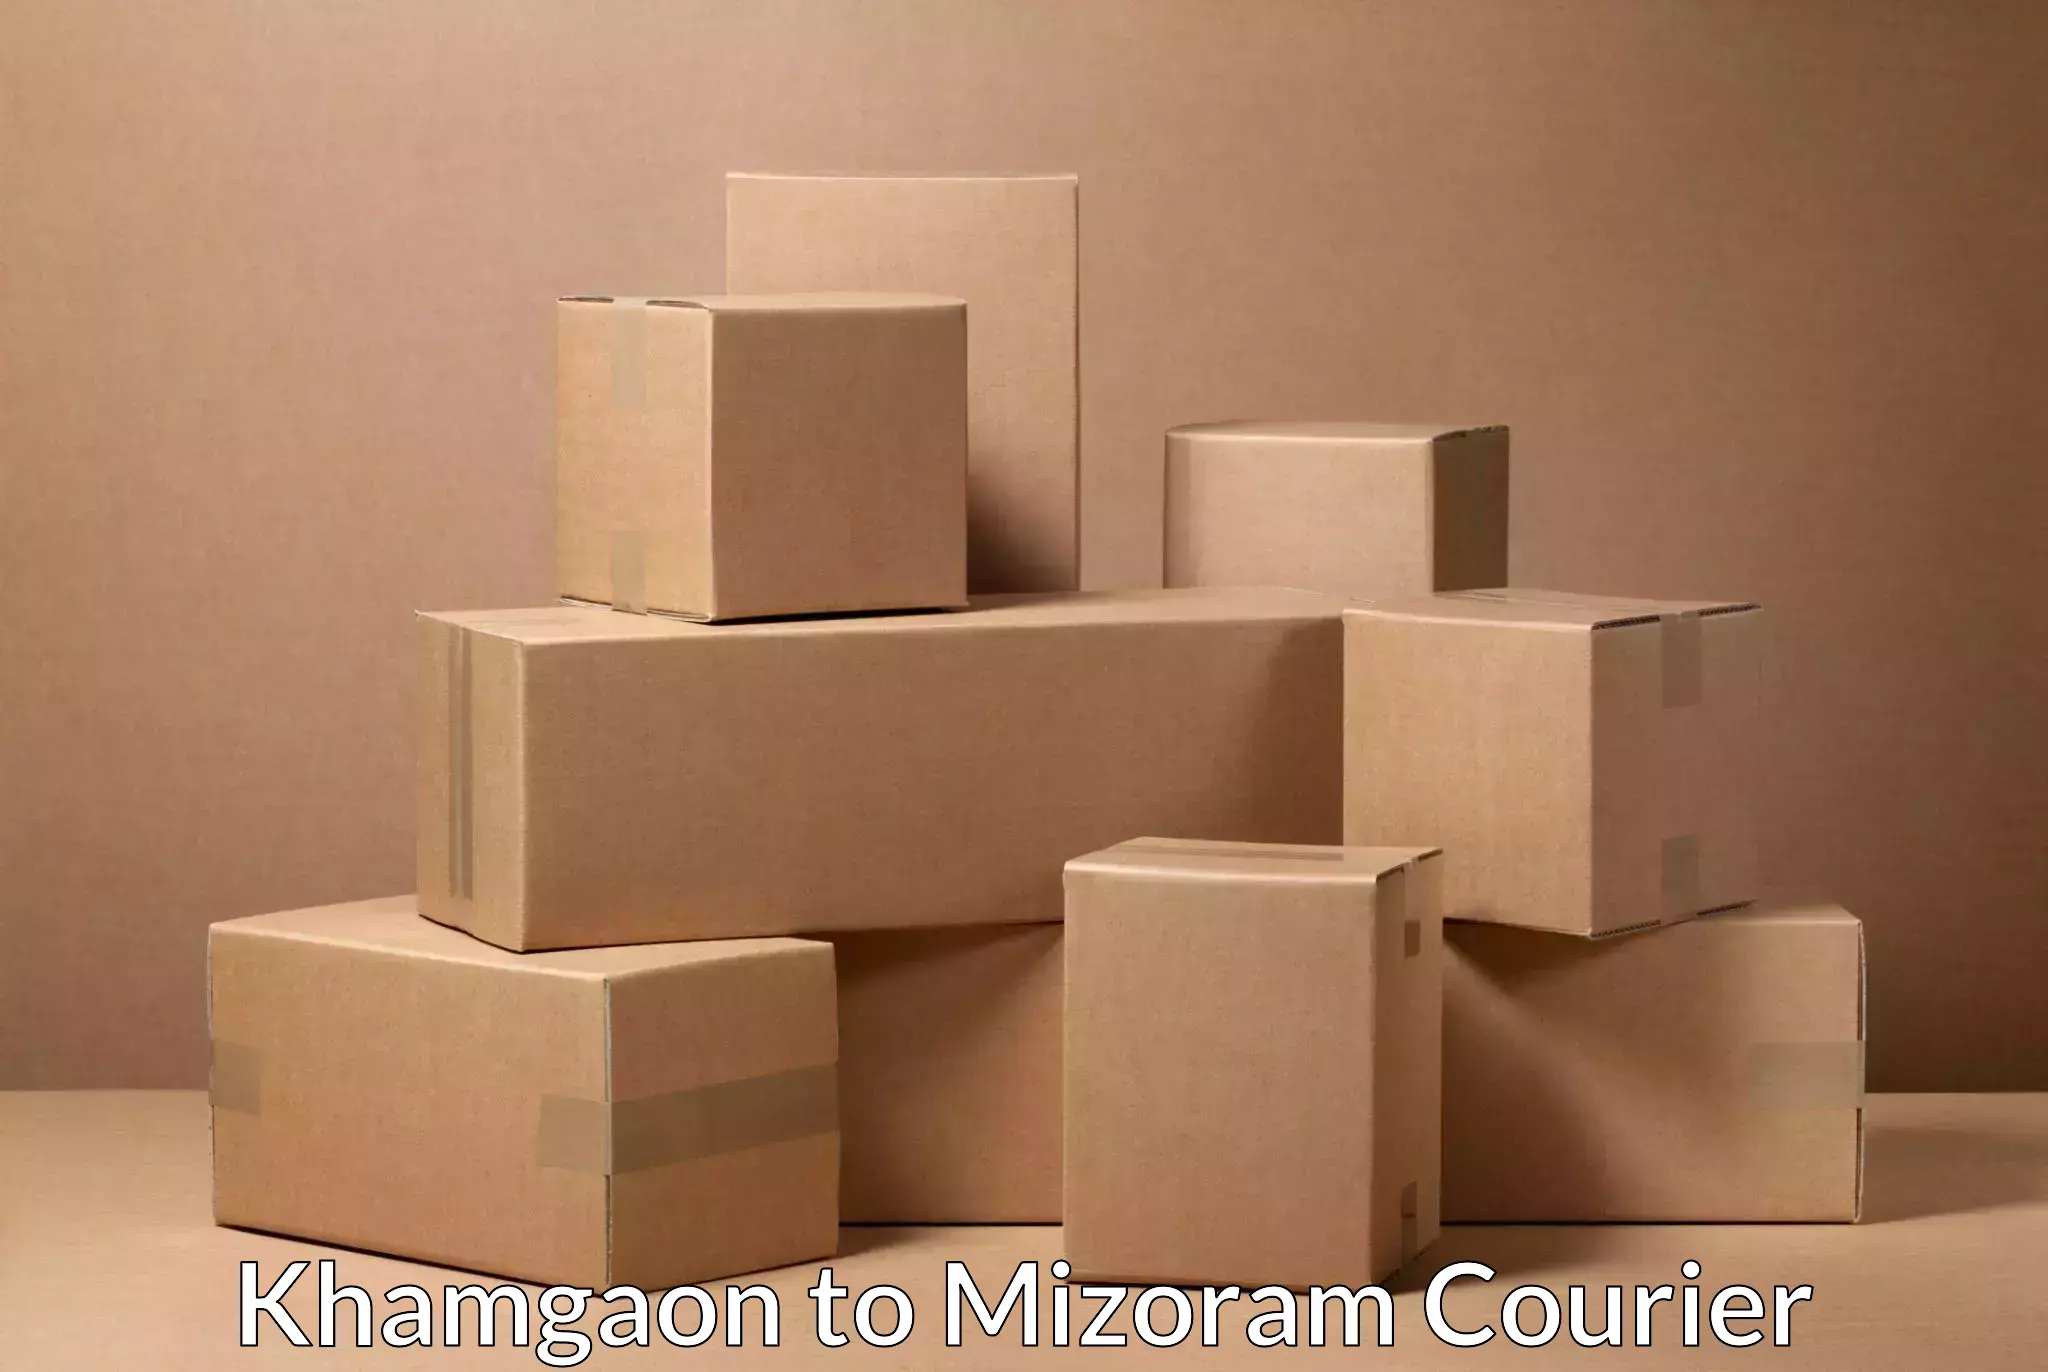 Courier service partnerships Khamgaon to Mizoram